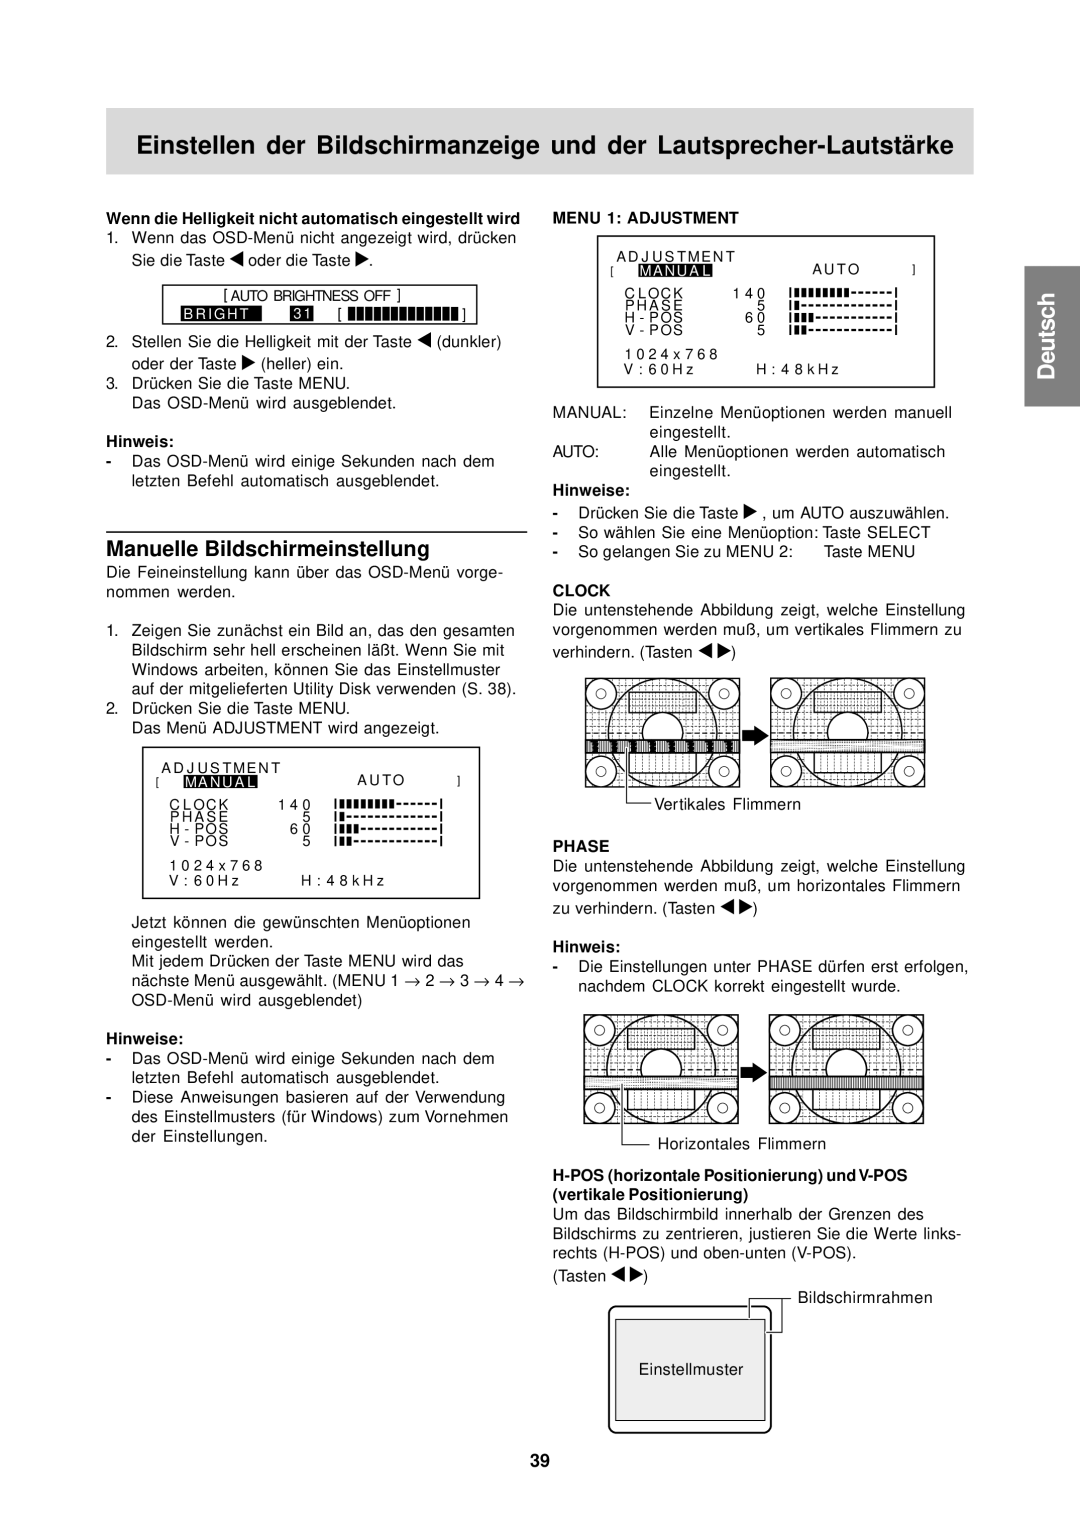 Sharp LL-T15S1 operation manual Manuelle Bildschirmeinstellung, Wenn die Helligkeit nicht automatisch eingestellt wird 